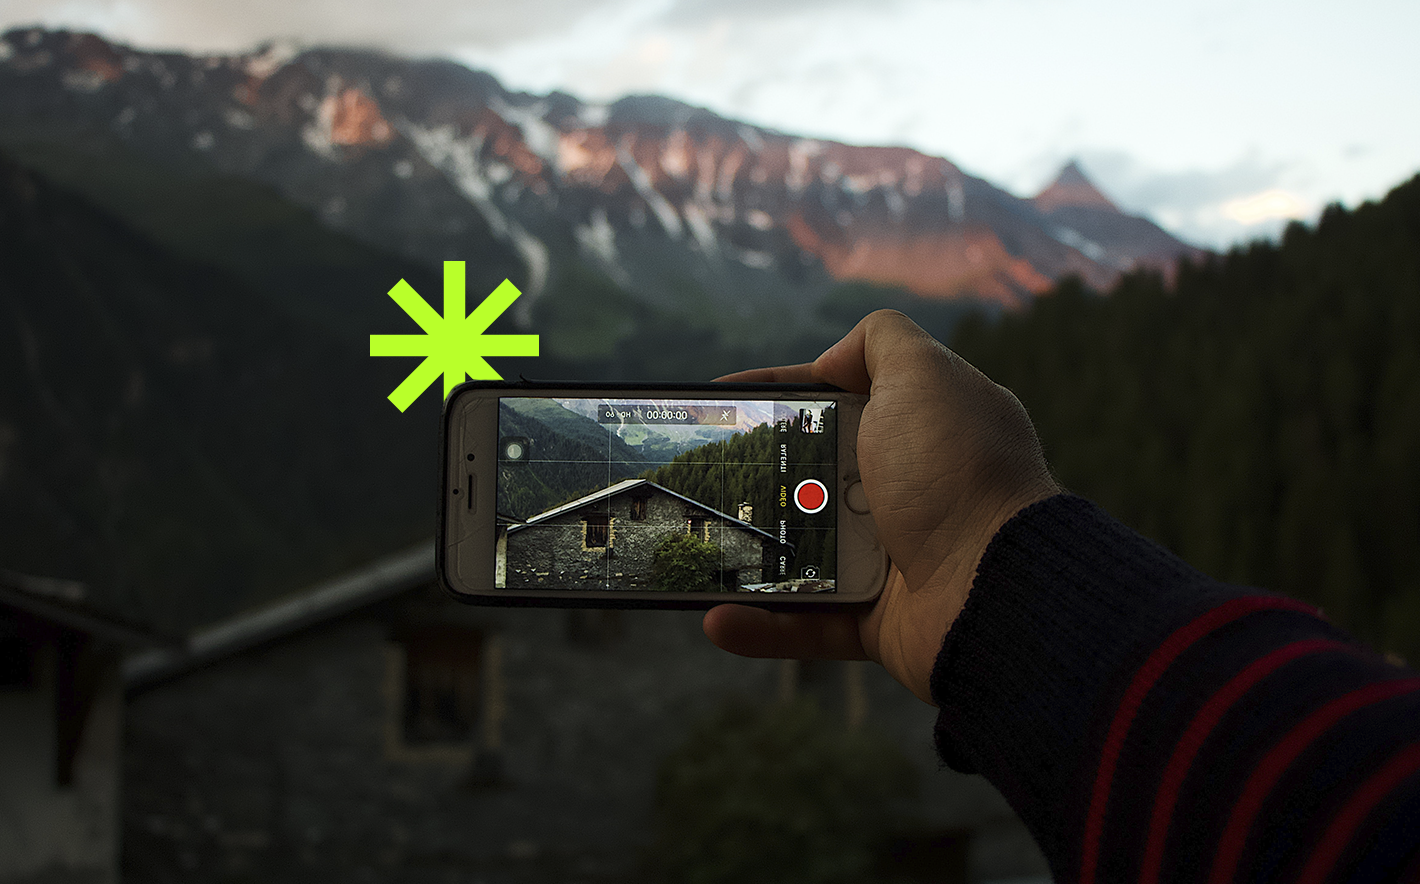 Creatividad de un un teléfono móvil haciendo una foto a un paisaje para el post “¿Sigue siendo relevante el número de seguidores en redes sociales?”